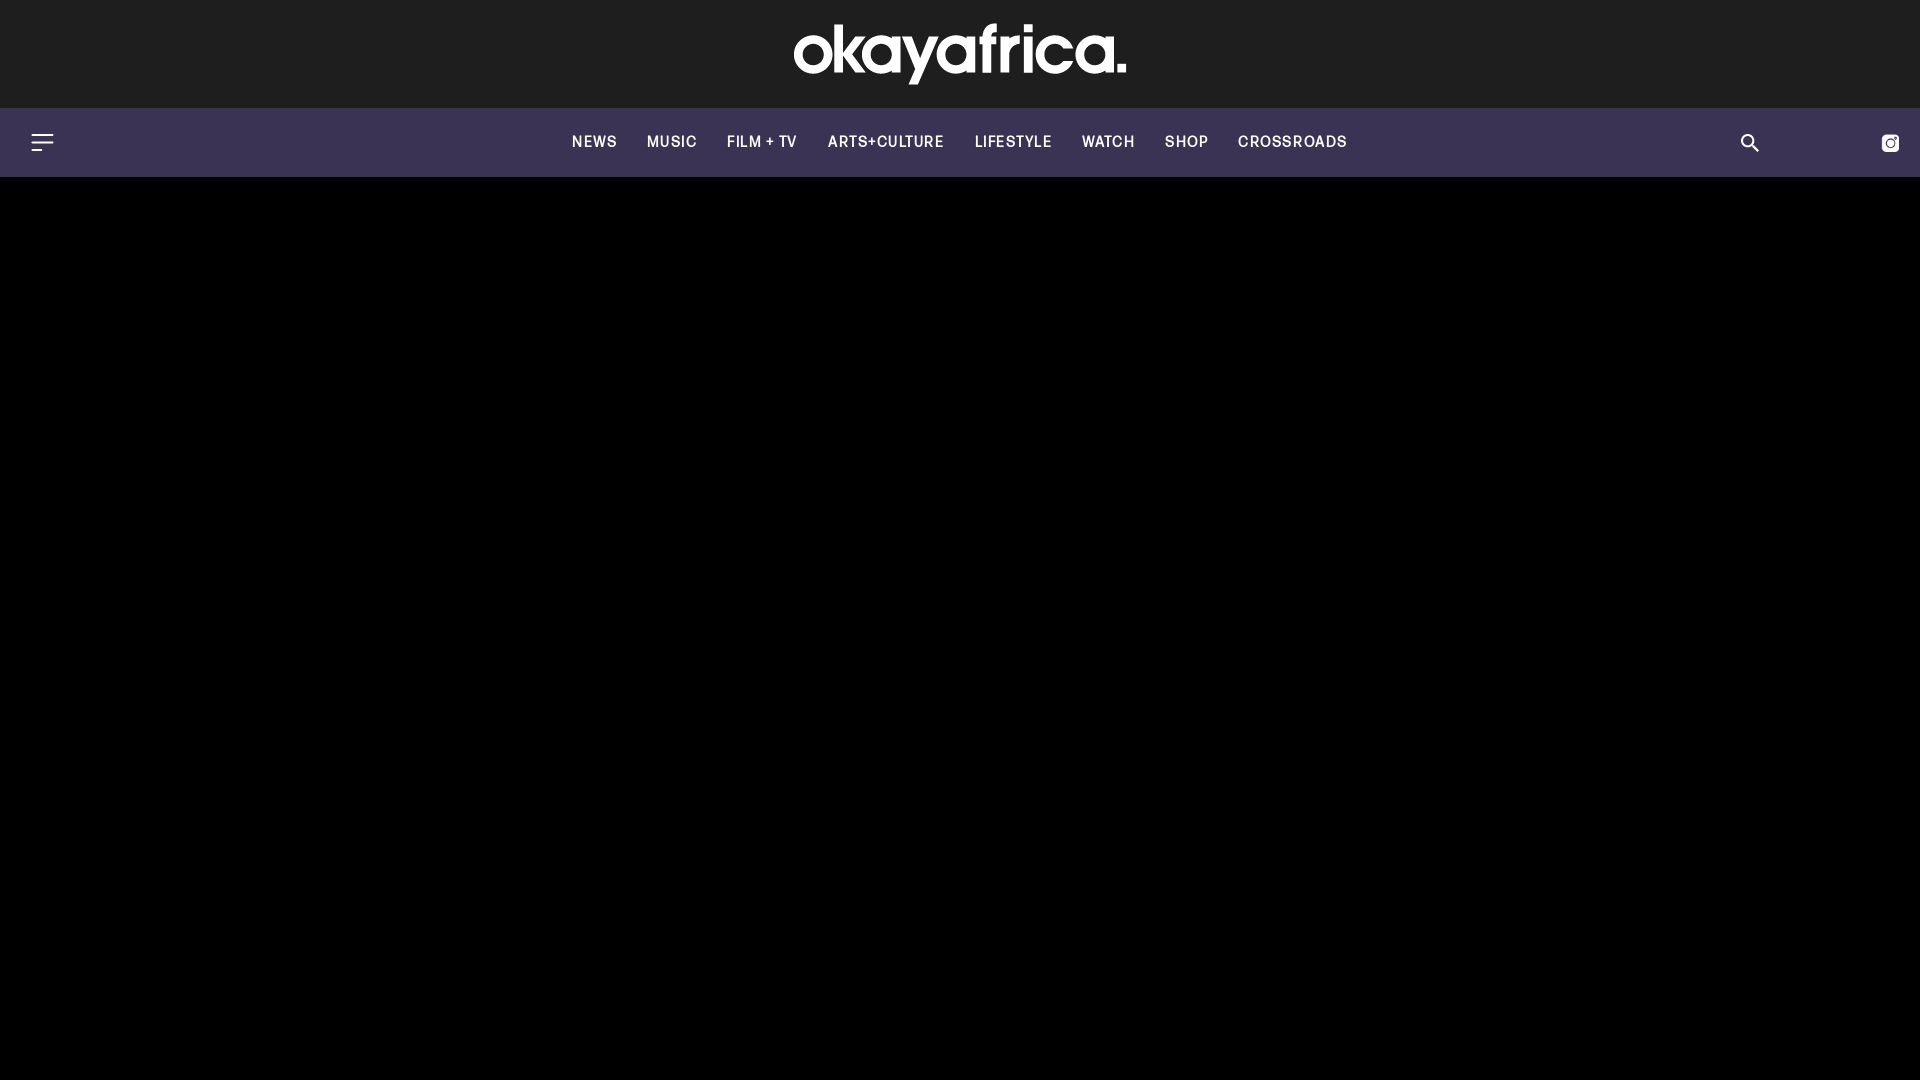 Stato del sito web okayafrica.com è   ONLINE